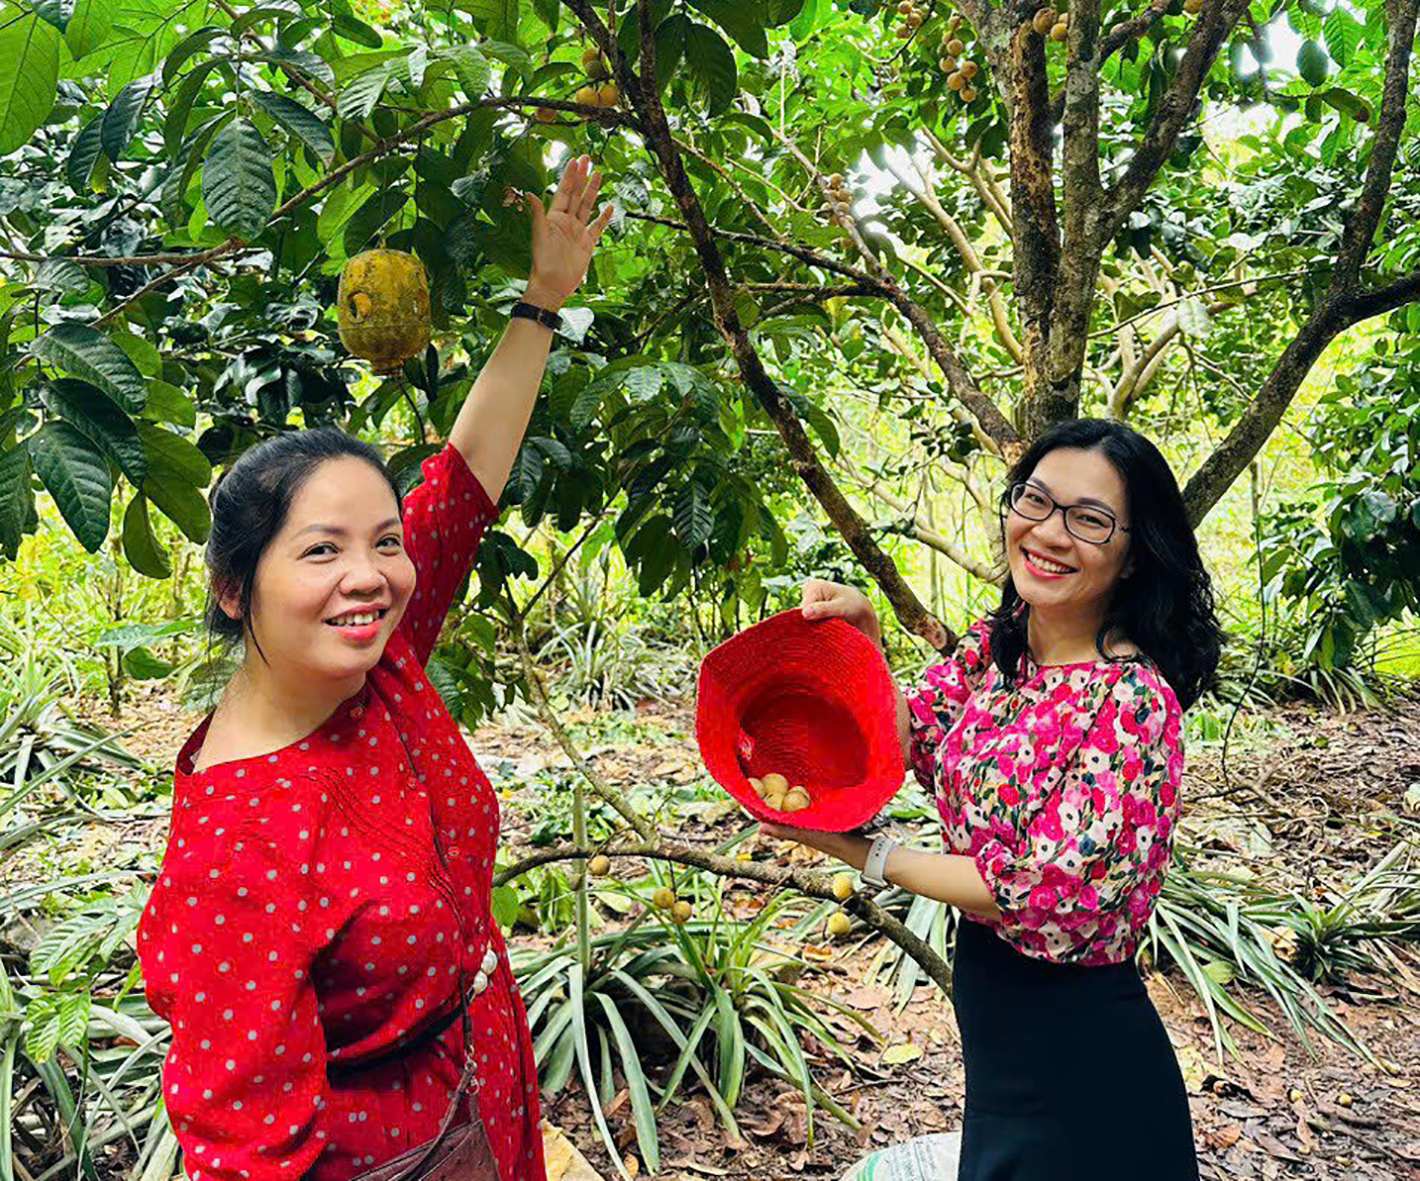 Bà Rịa - Vũng Tàu: Bồi dưỡng kiến thức về du lịch cộng đồng